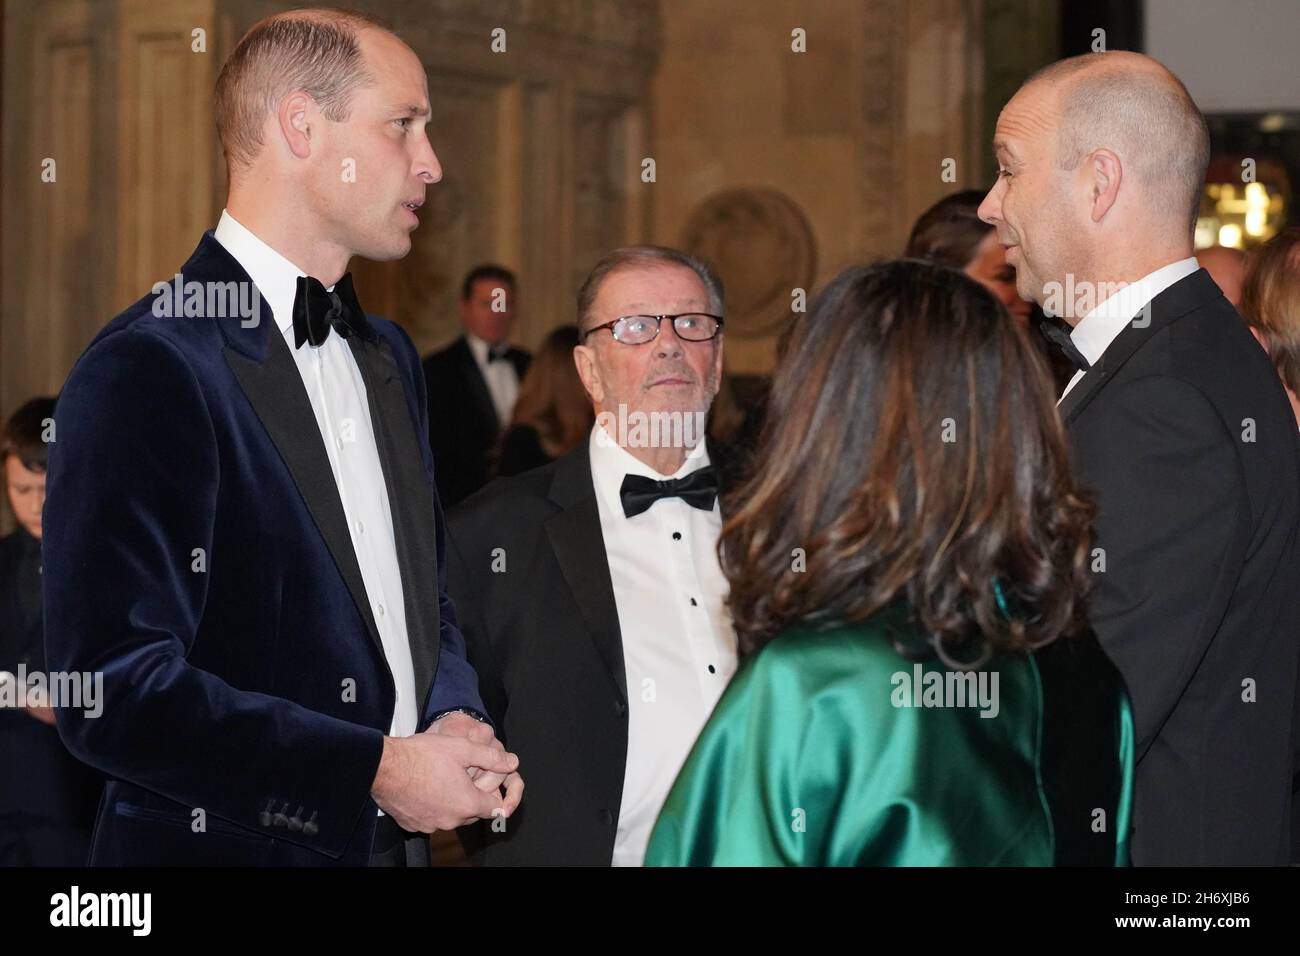 Le duc de Cambridge (à gauche) arrive pour la Royal Variety Performance au Royal Albert Hall, Londres.Date de la photo: Jeudi 18 novembre 2021. Banque D'Images